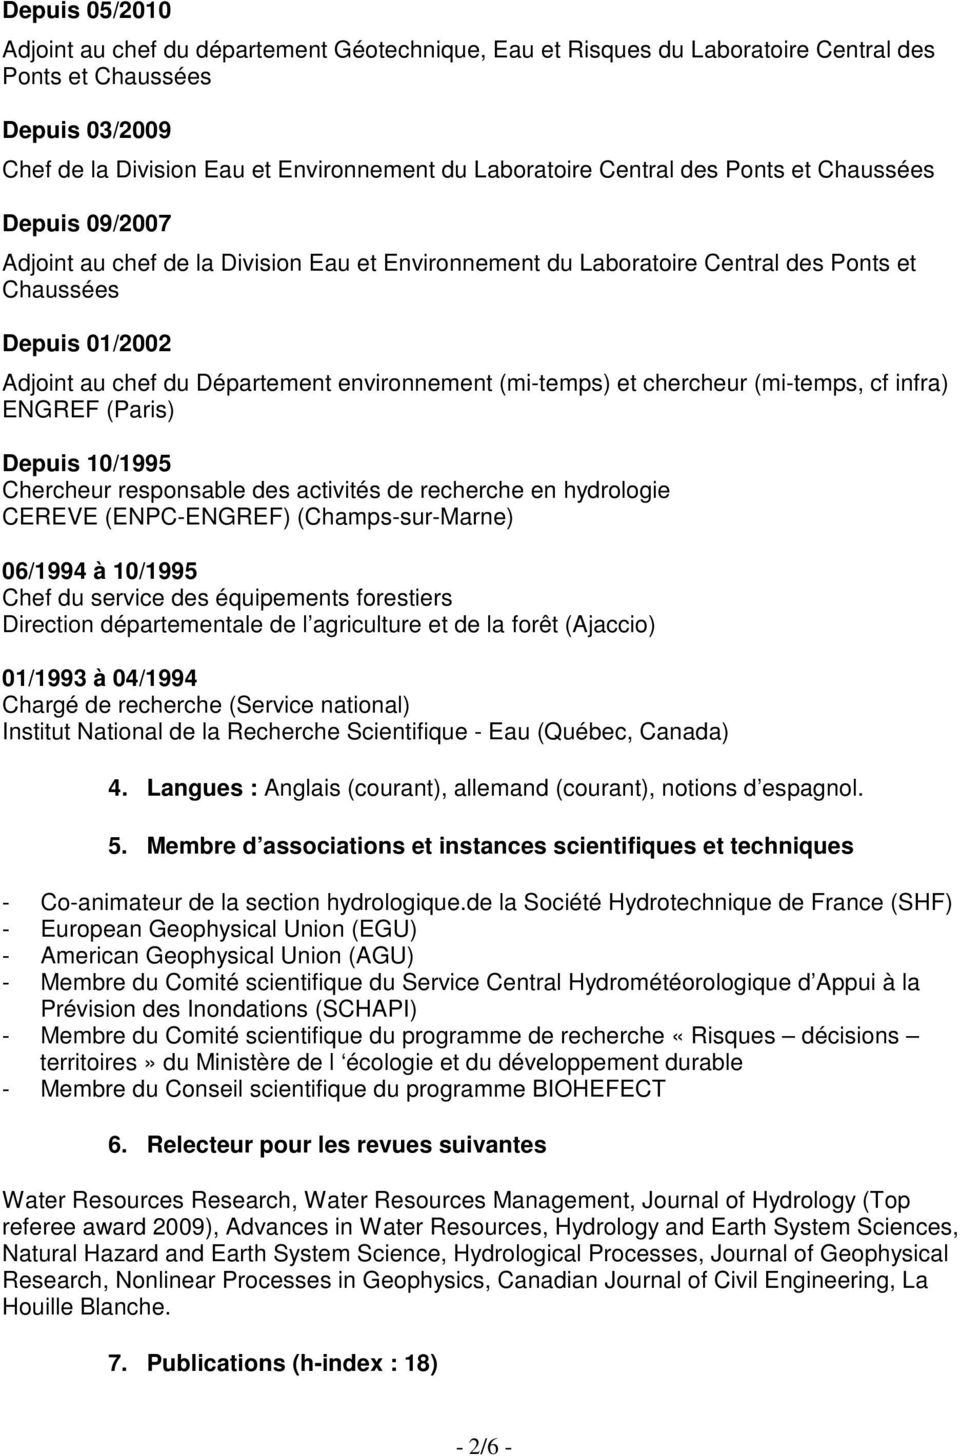 (mi-temps) et chercheur (mi-temps, cf infra) ENGREF (Paris) Depuis 10/1995 Chercheur responsable des activités de recherche en hydrologie CEREVE (ENPC-ENGREF) (Champs-sur-Marne) 06/1994 à 10/1995